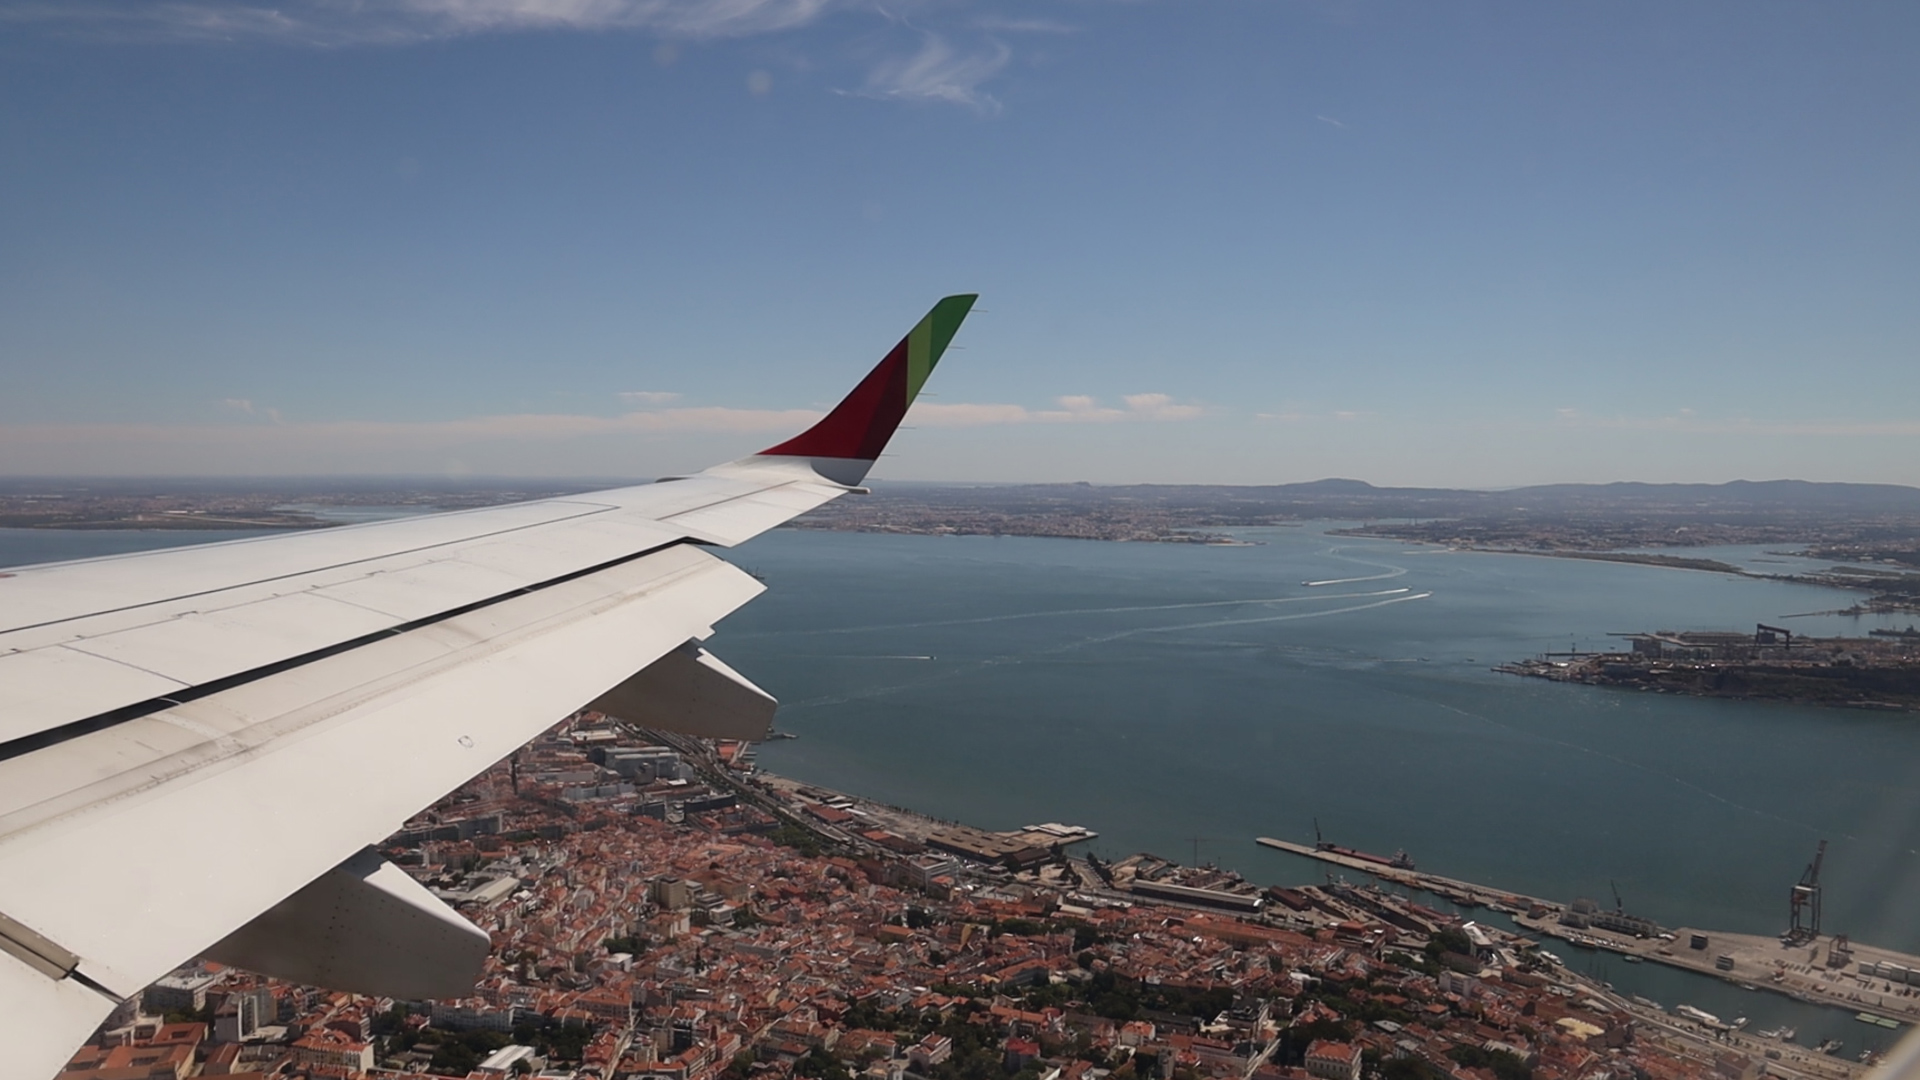 Anflug auf Lissabon